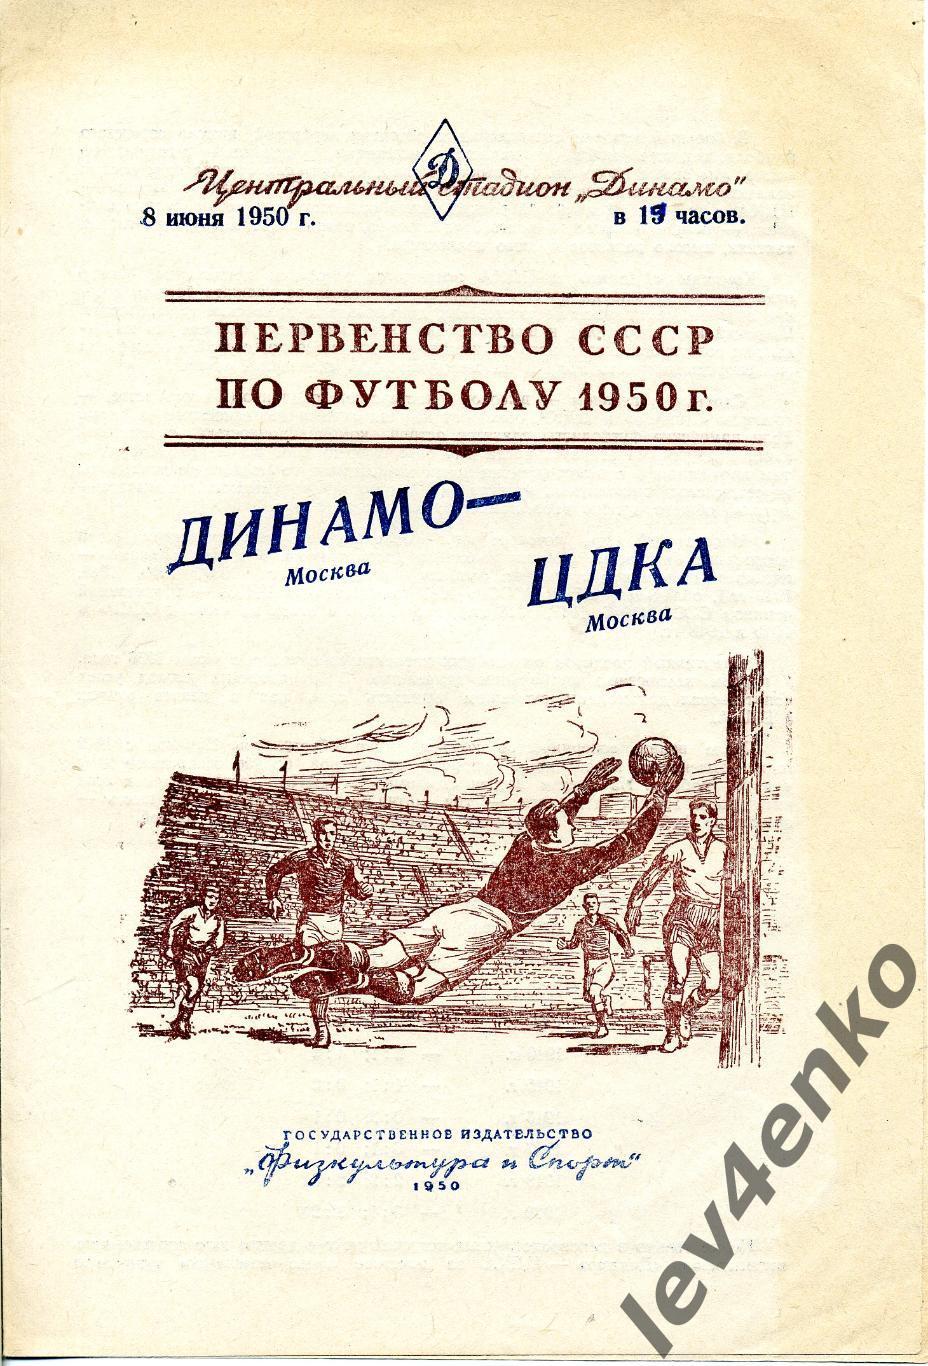 ЦДКА / ЦСКА (Москва) - Динамо (Москва) 08.06.1950